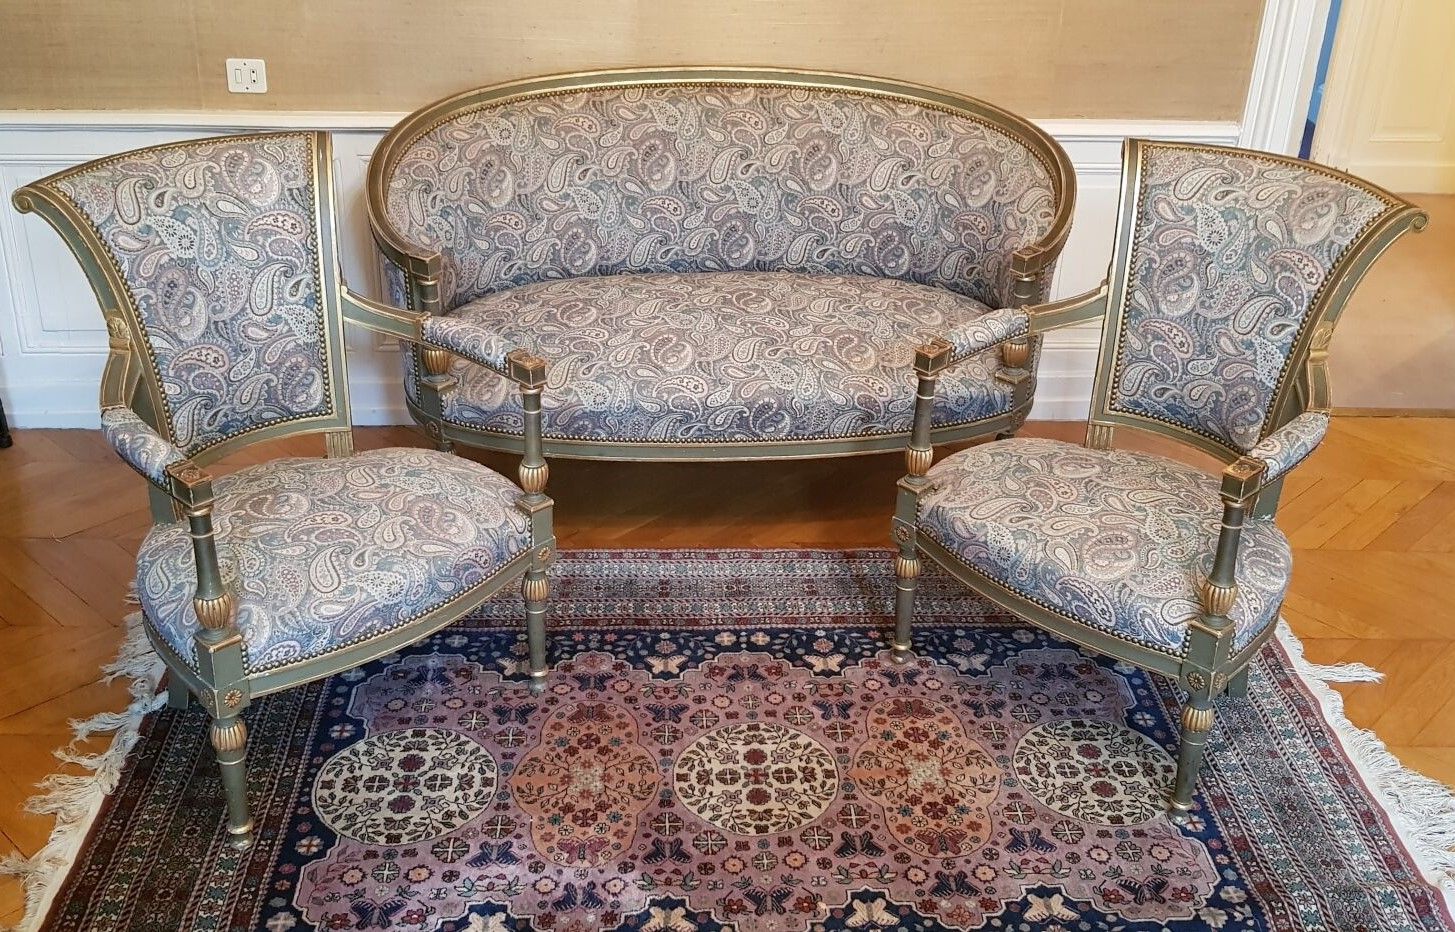 Null Salotto in stile Direttorio con divano a cesto e due poltrone
XX secolo